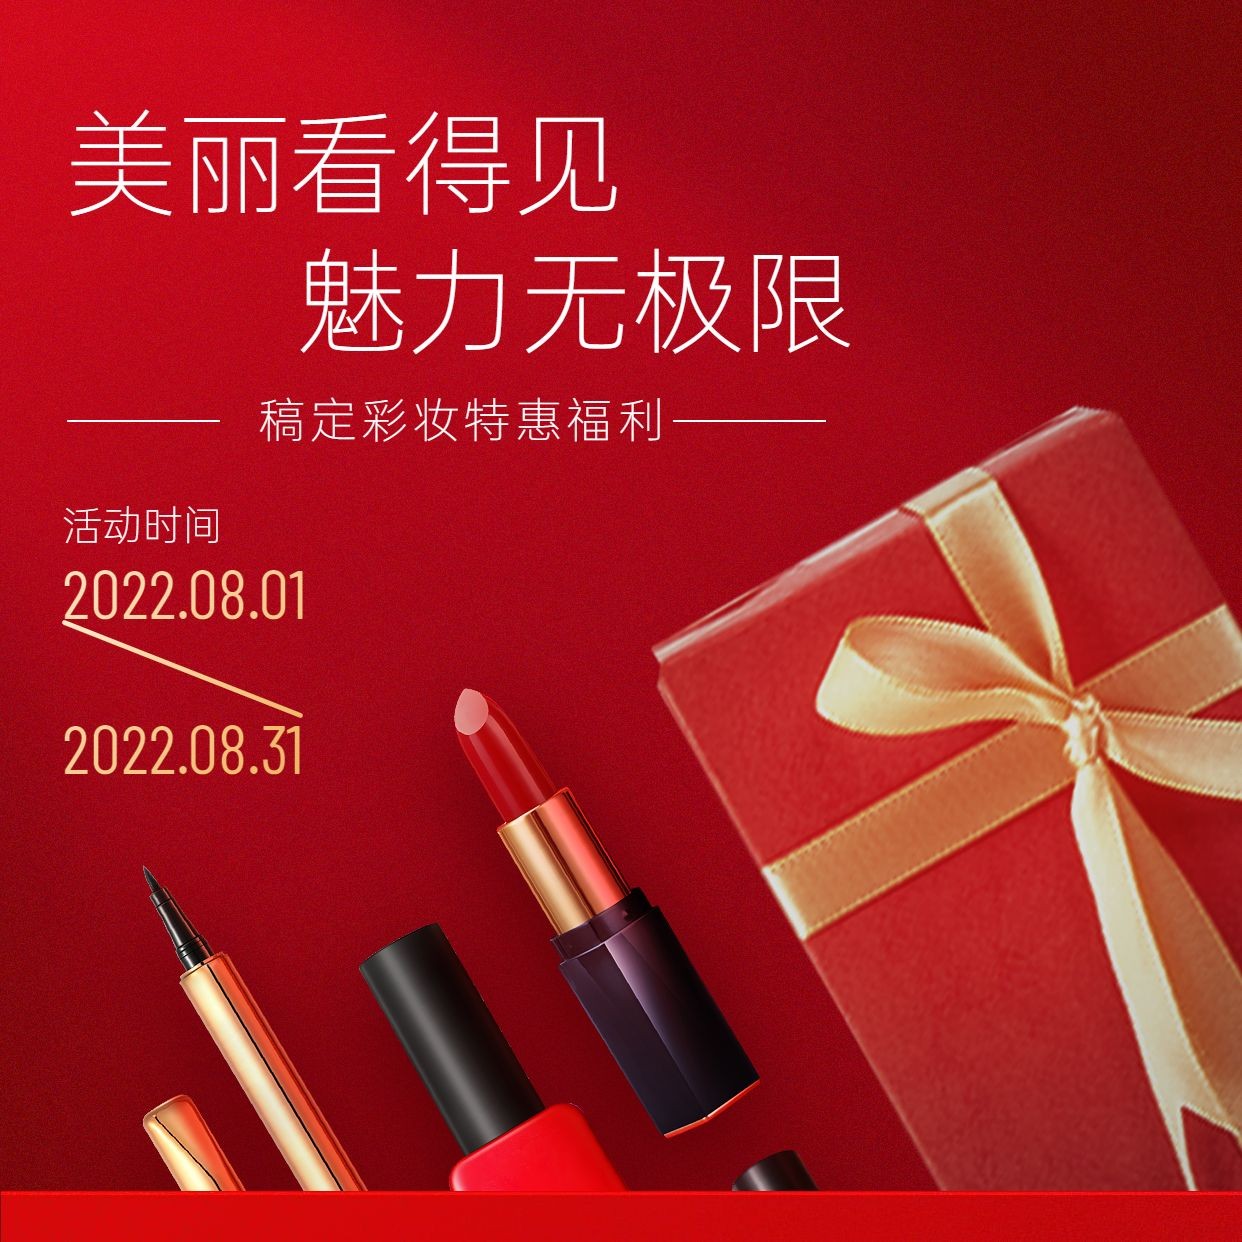 微商美容美妆彩妆产品营销方形海报预览效果